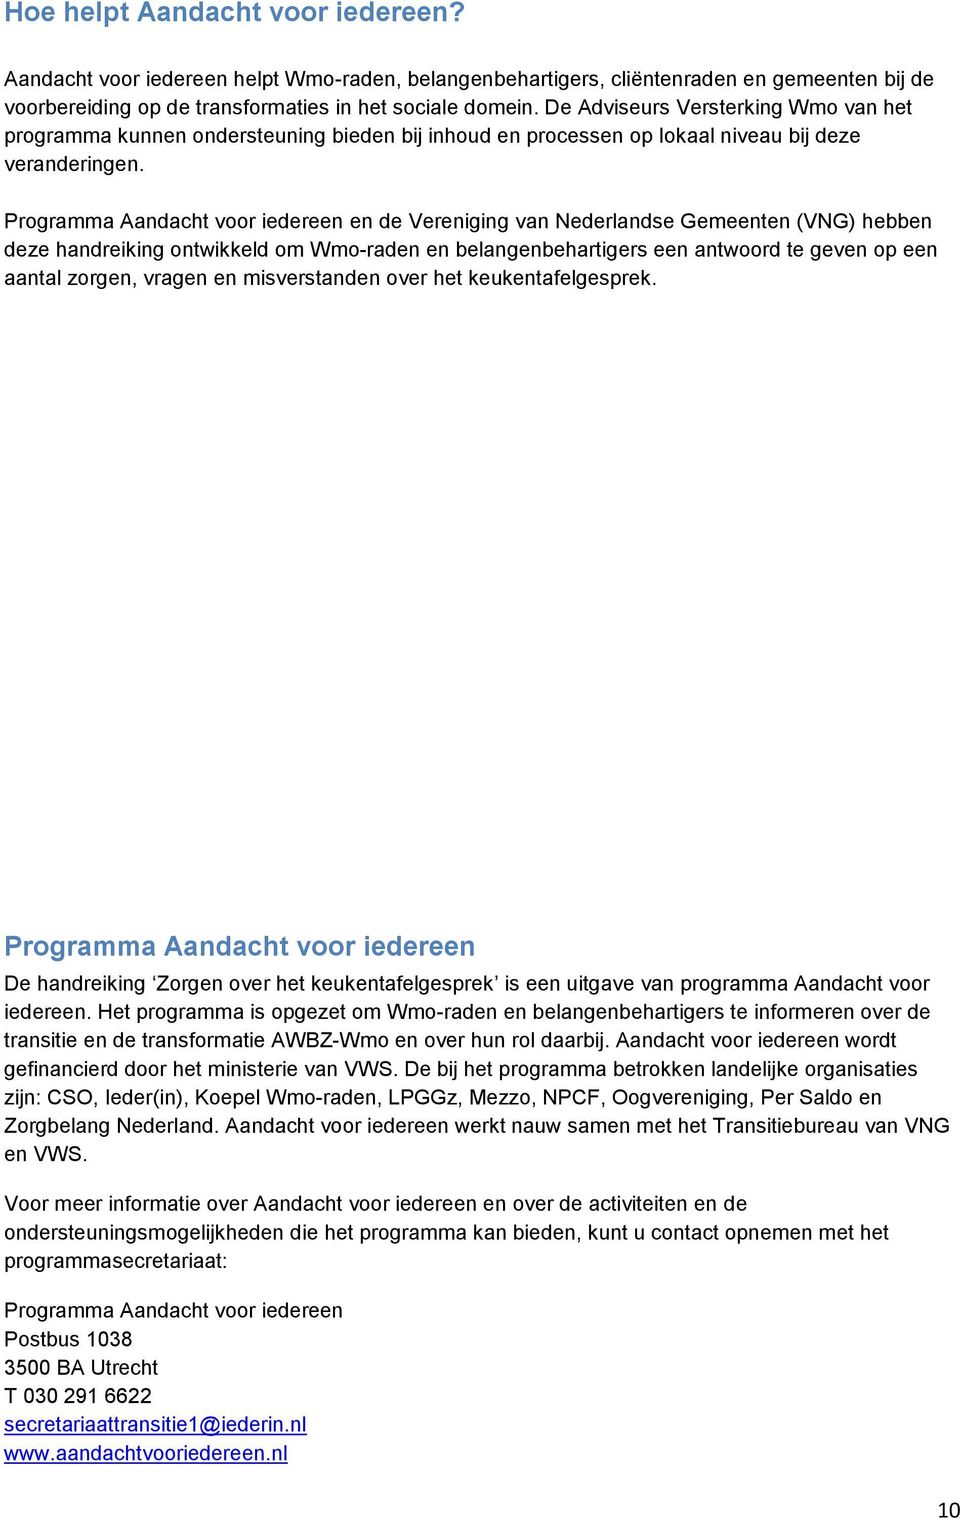 Programma Aandacht voor iedereen en de Vereniging van Nederlandse Gemeenten (VNG) hebben deze handreiking ontwikkeld om Wmo-raden en belangenbehartigers een antwoord te geven op een aantal zorgen,